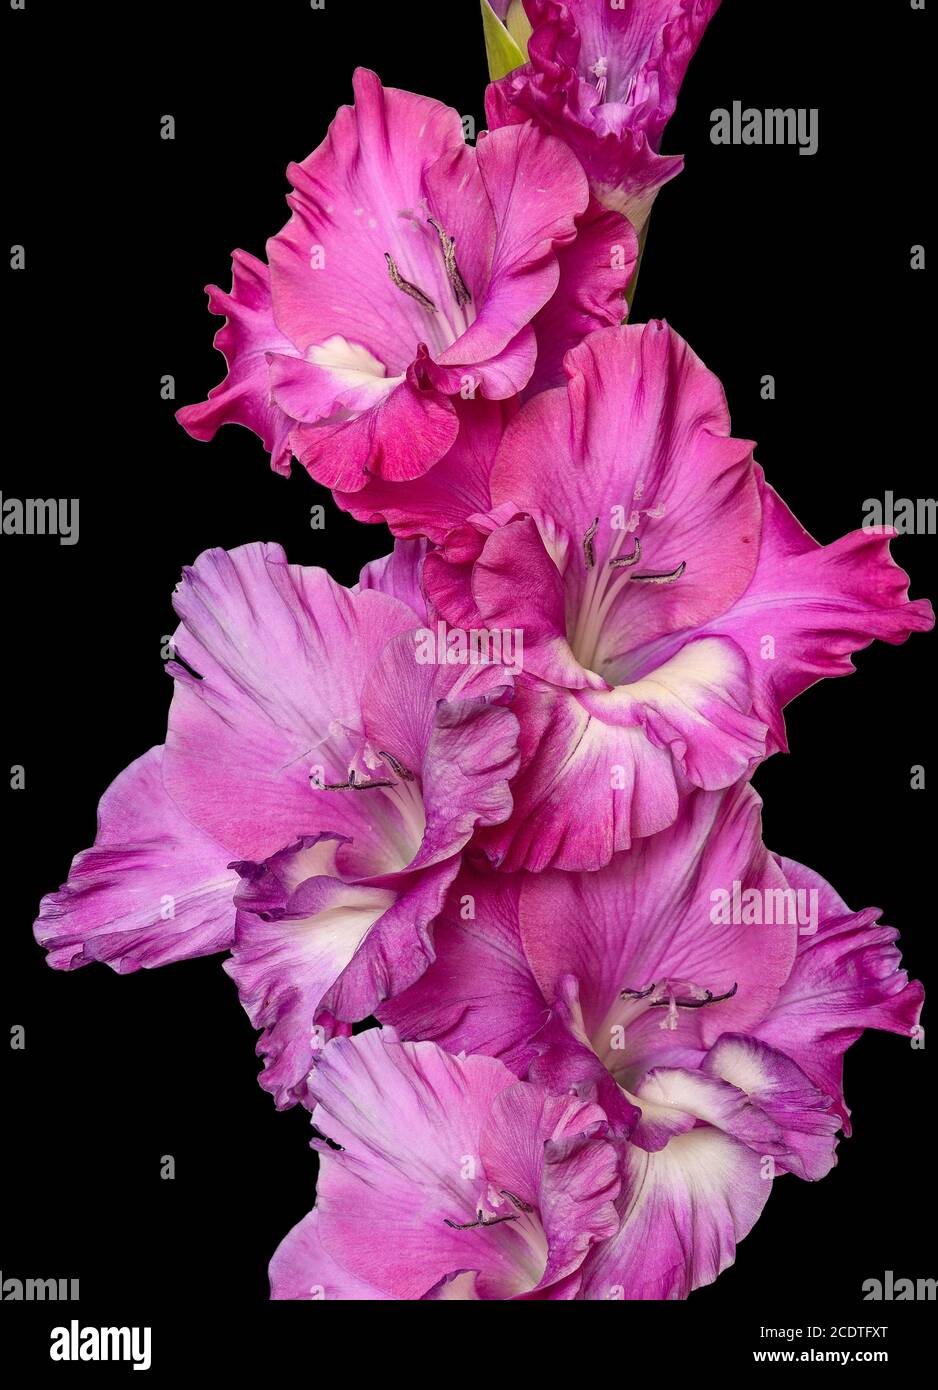 Single pink gladiolus flower close up, isolated on black background Stock Photo